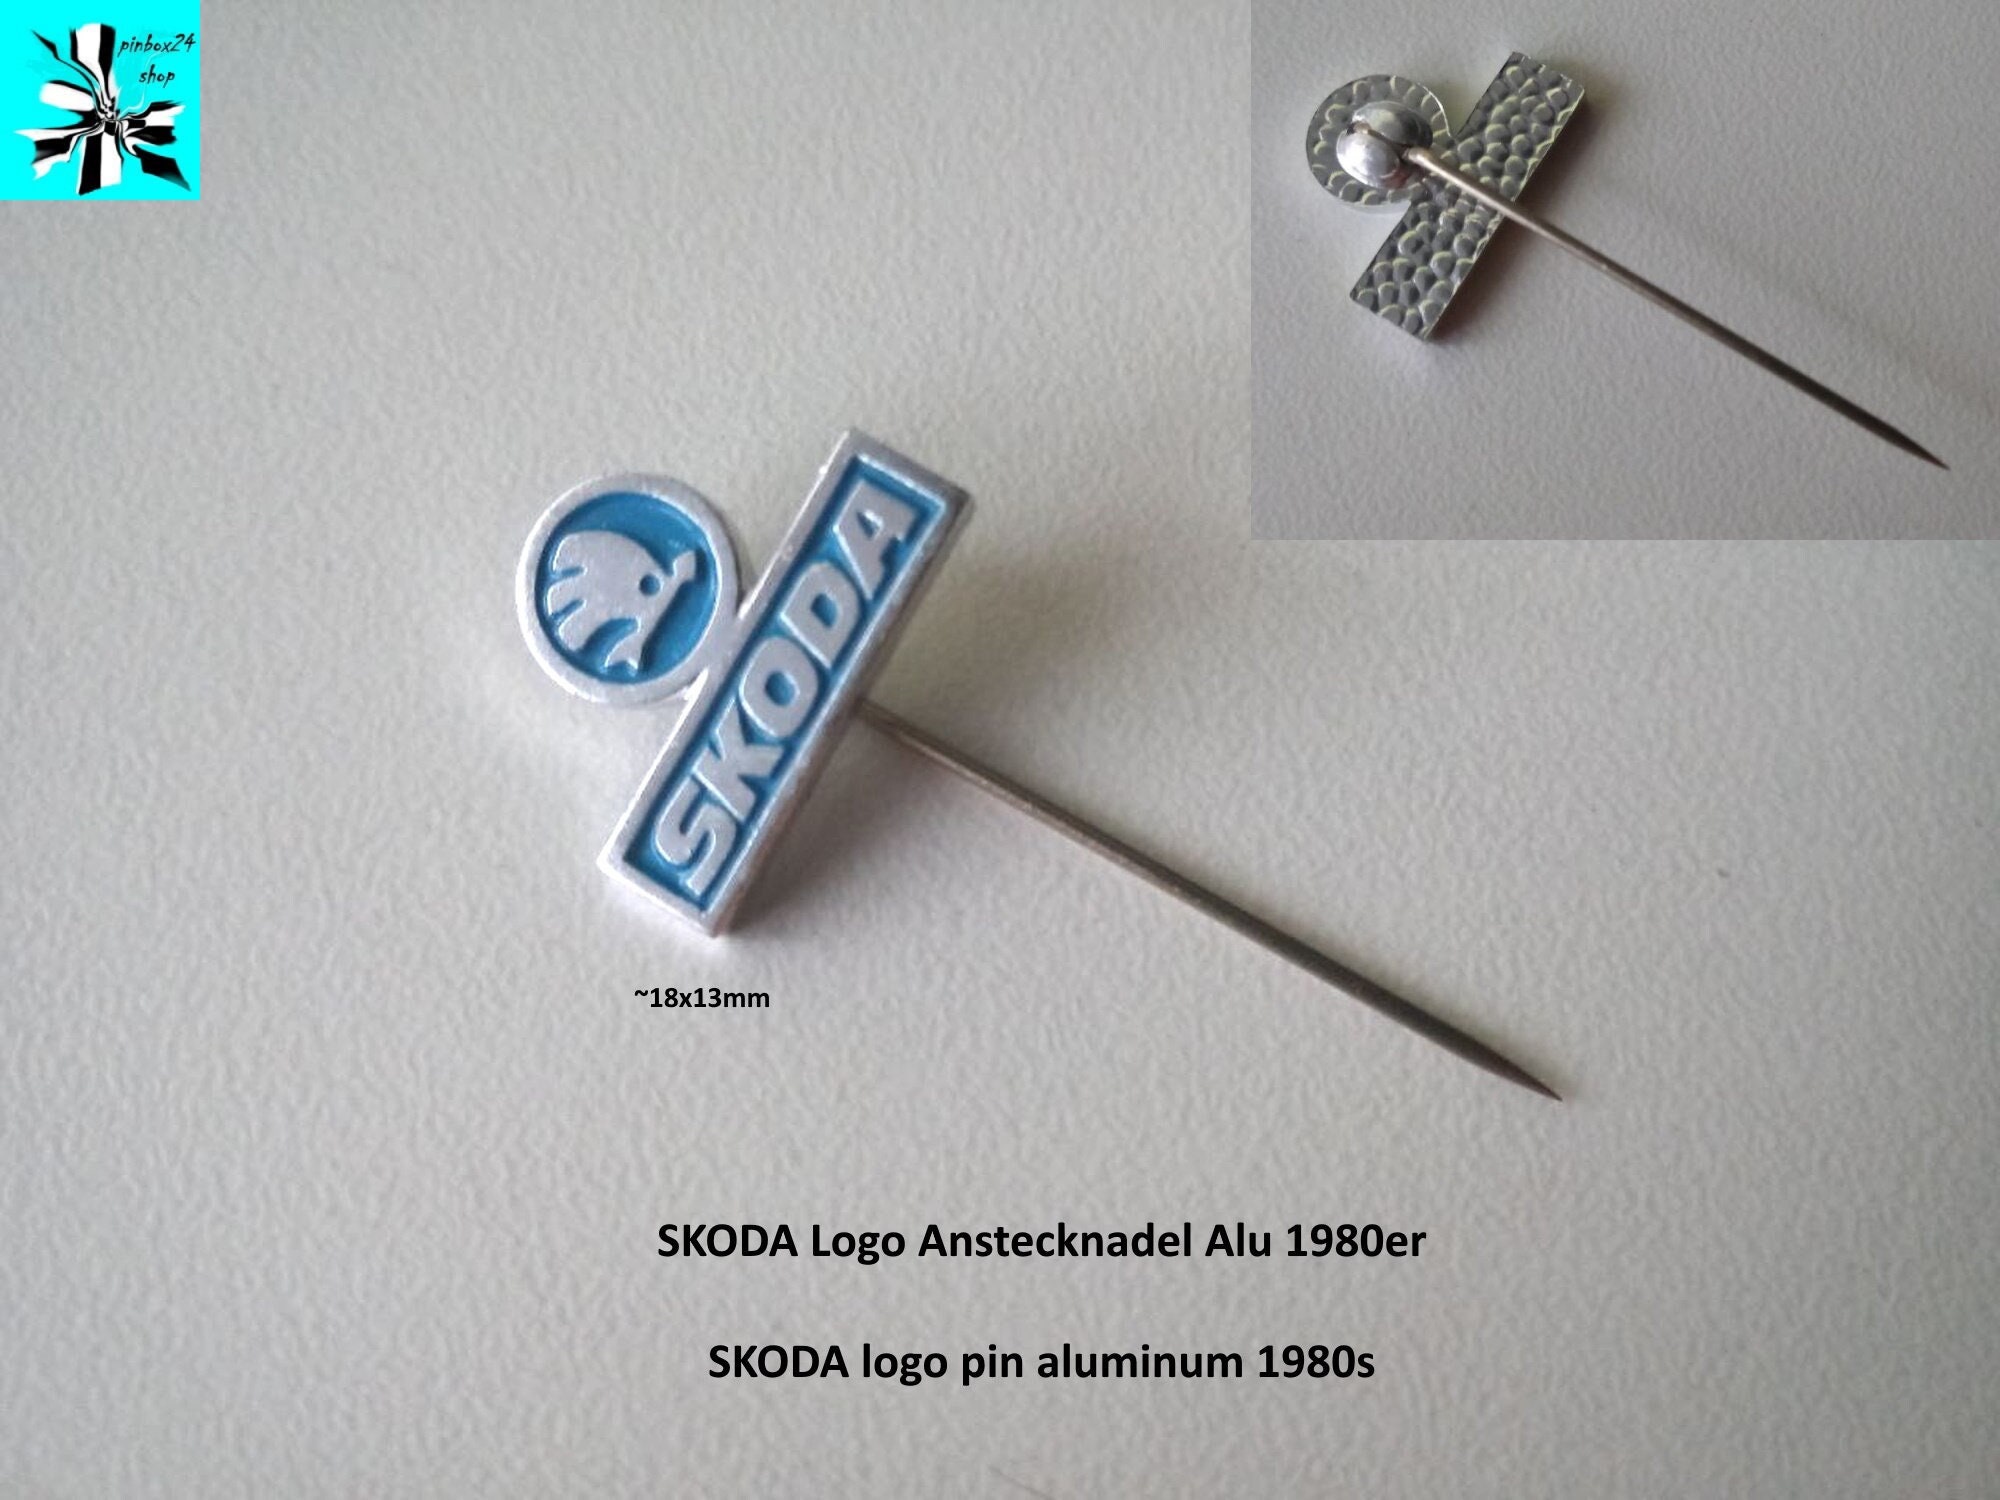 Skoda Karoq/Kodiaq aufgerüstet, 3D gedruckter Getränkehalter Skoda Zubehör,  Autozubehör, Skoda, Organiser, Aufgerüstet, -  Österreich